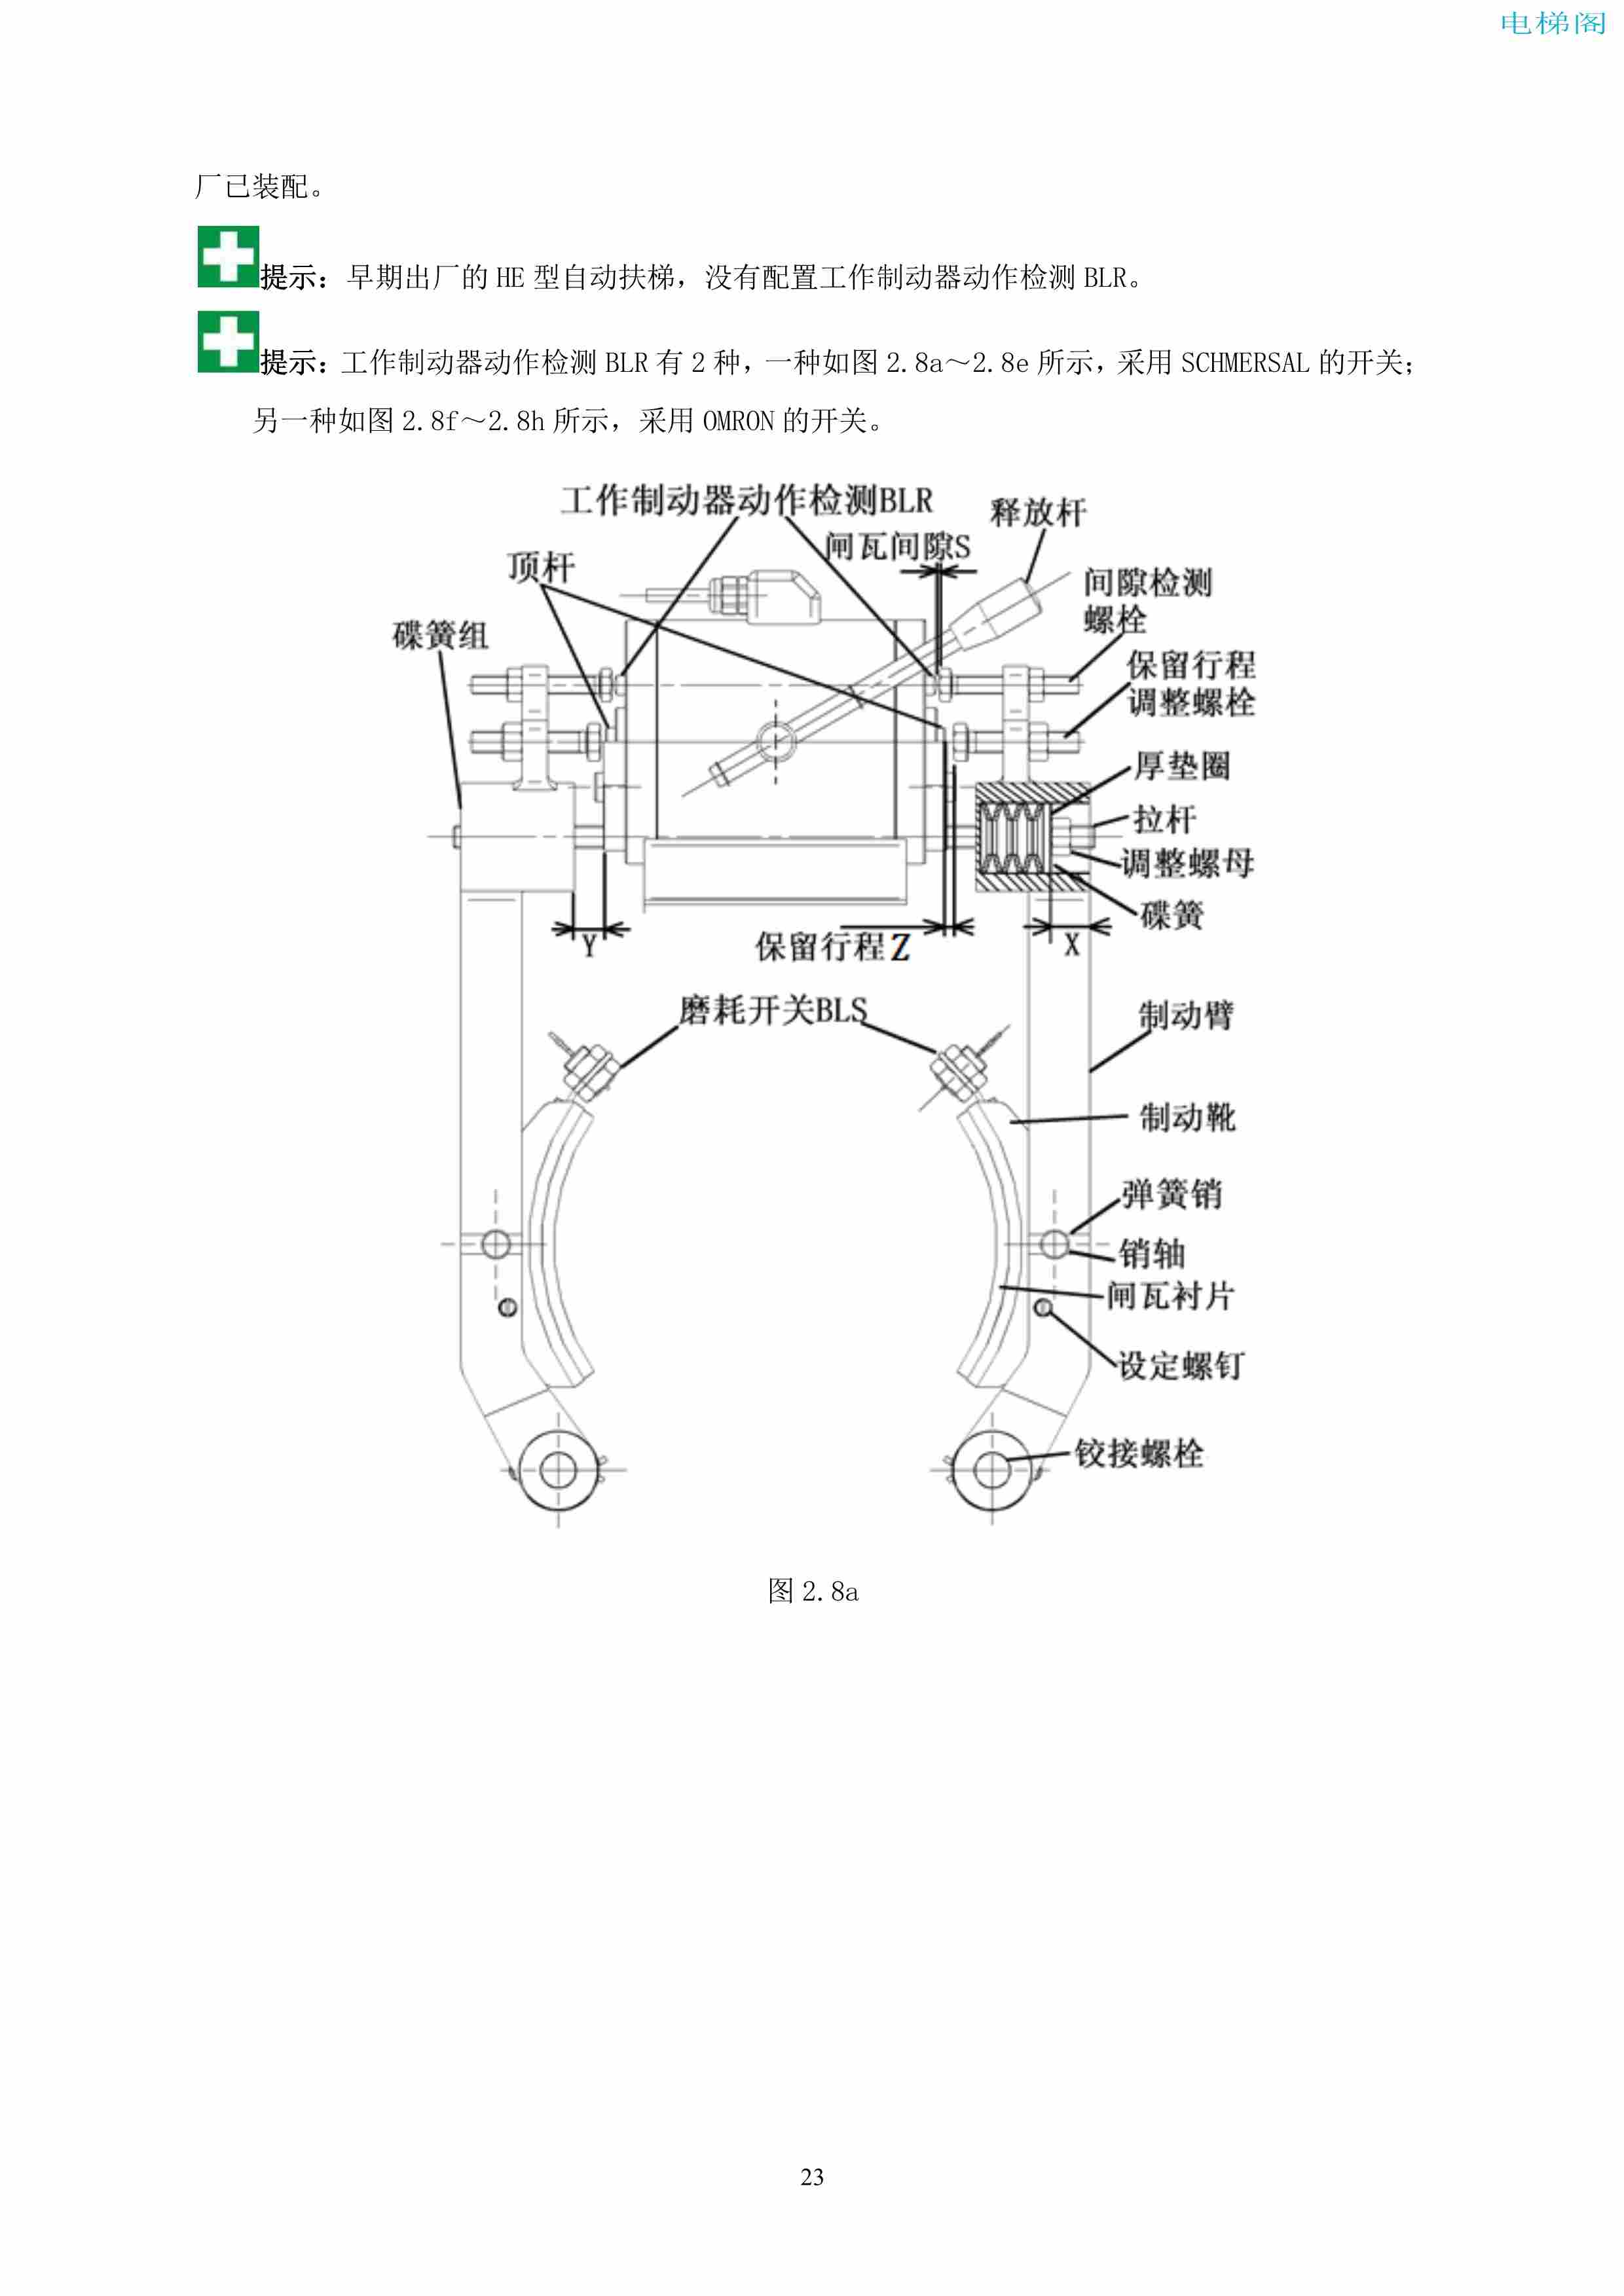 上海三菱电梯有限公司自动扶梯制动器维护作业要领汇编_24.jpg